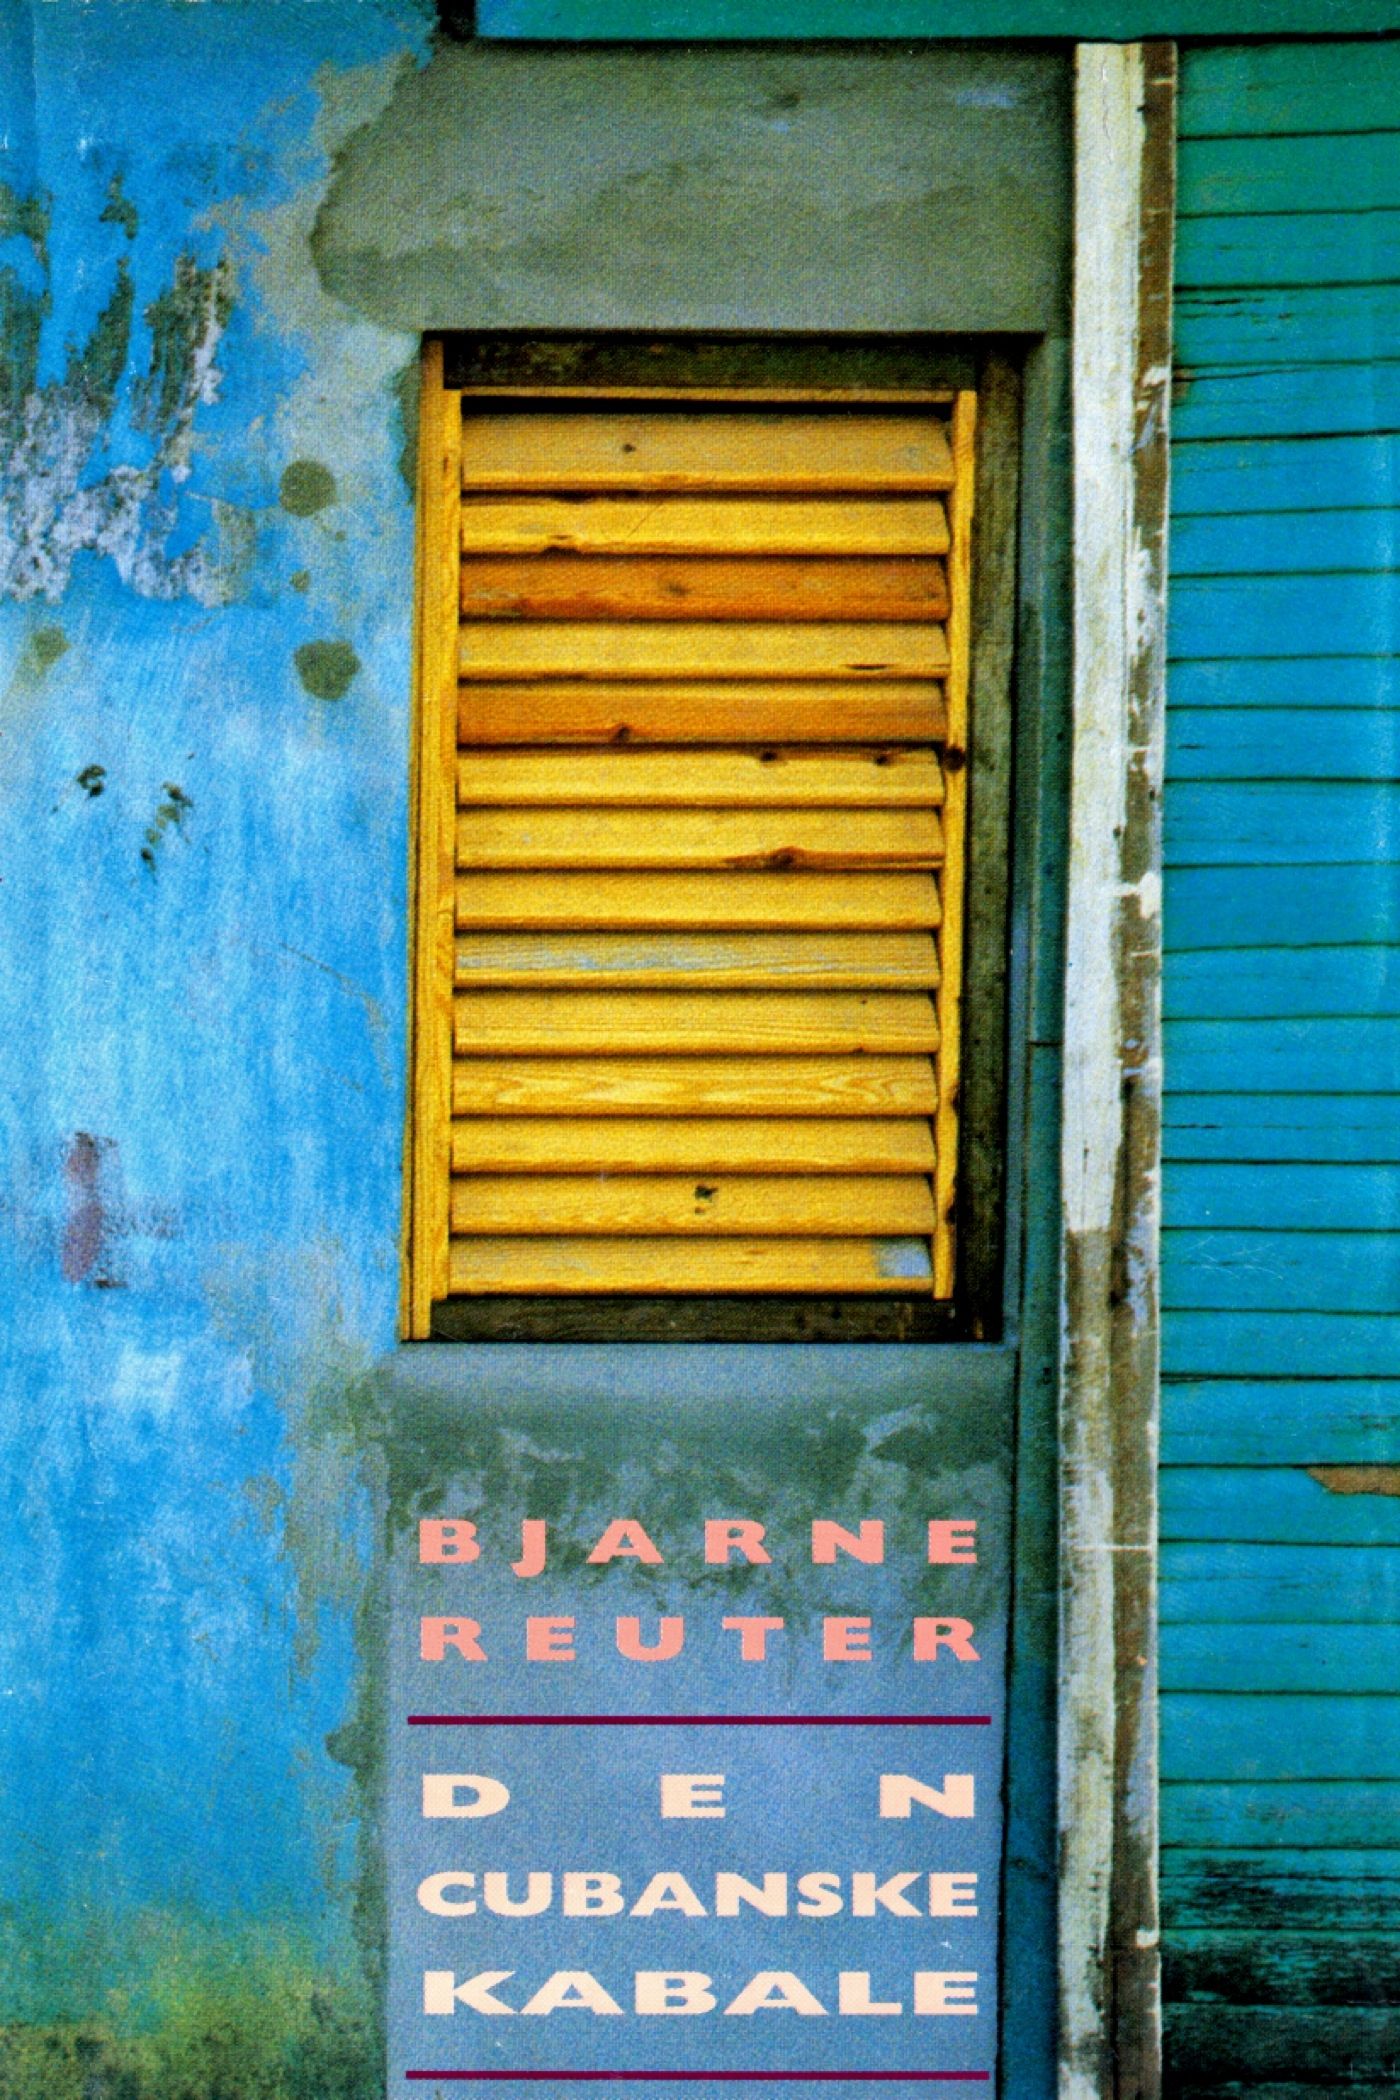 Den cubanske kabale, e-bok av Bjarne Reuter